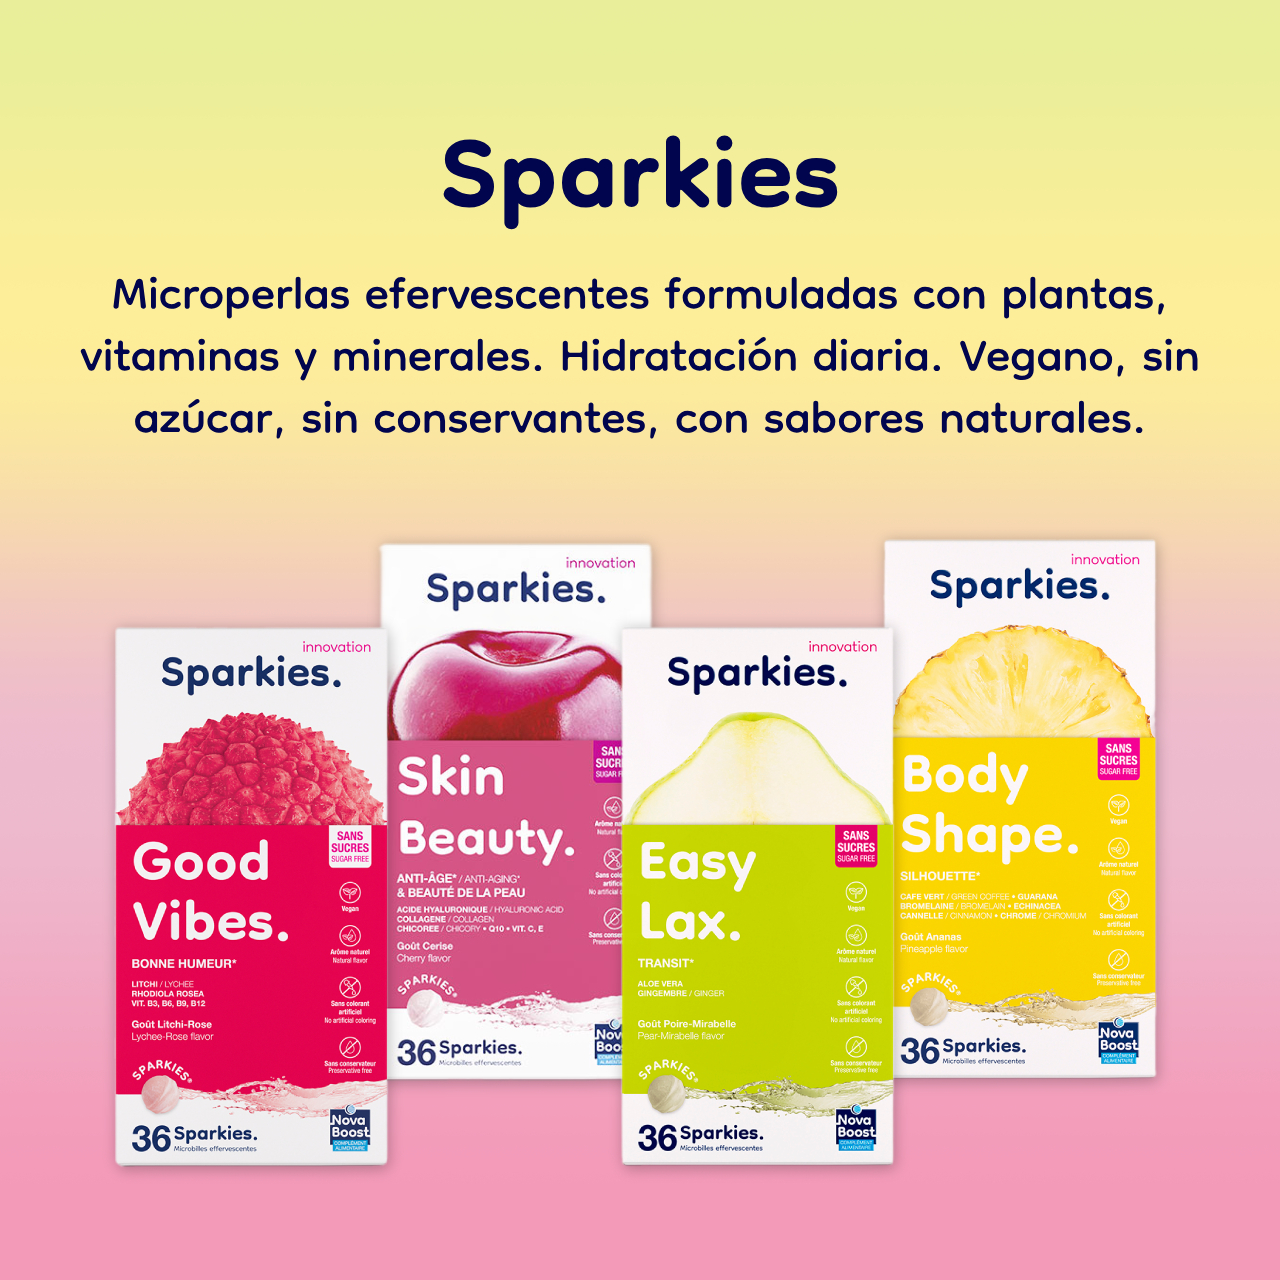 Sparkies. Microperlas efervescentes formuladas con plantas, vitaminas y minerales. Hidratación diaria. Vegano, sin azúcar, sin conservantes, con sabores naturales.